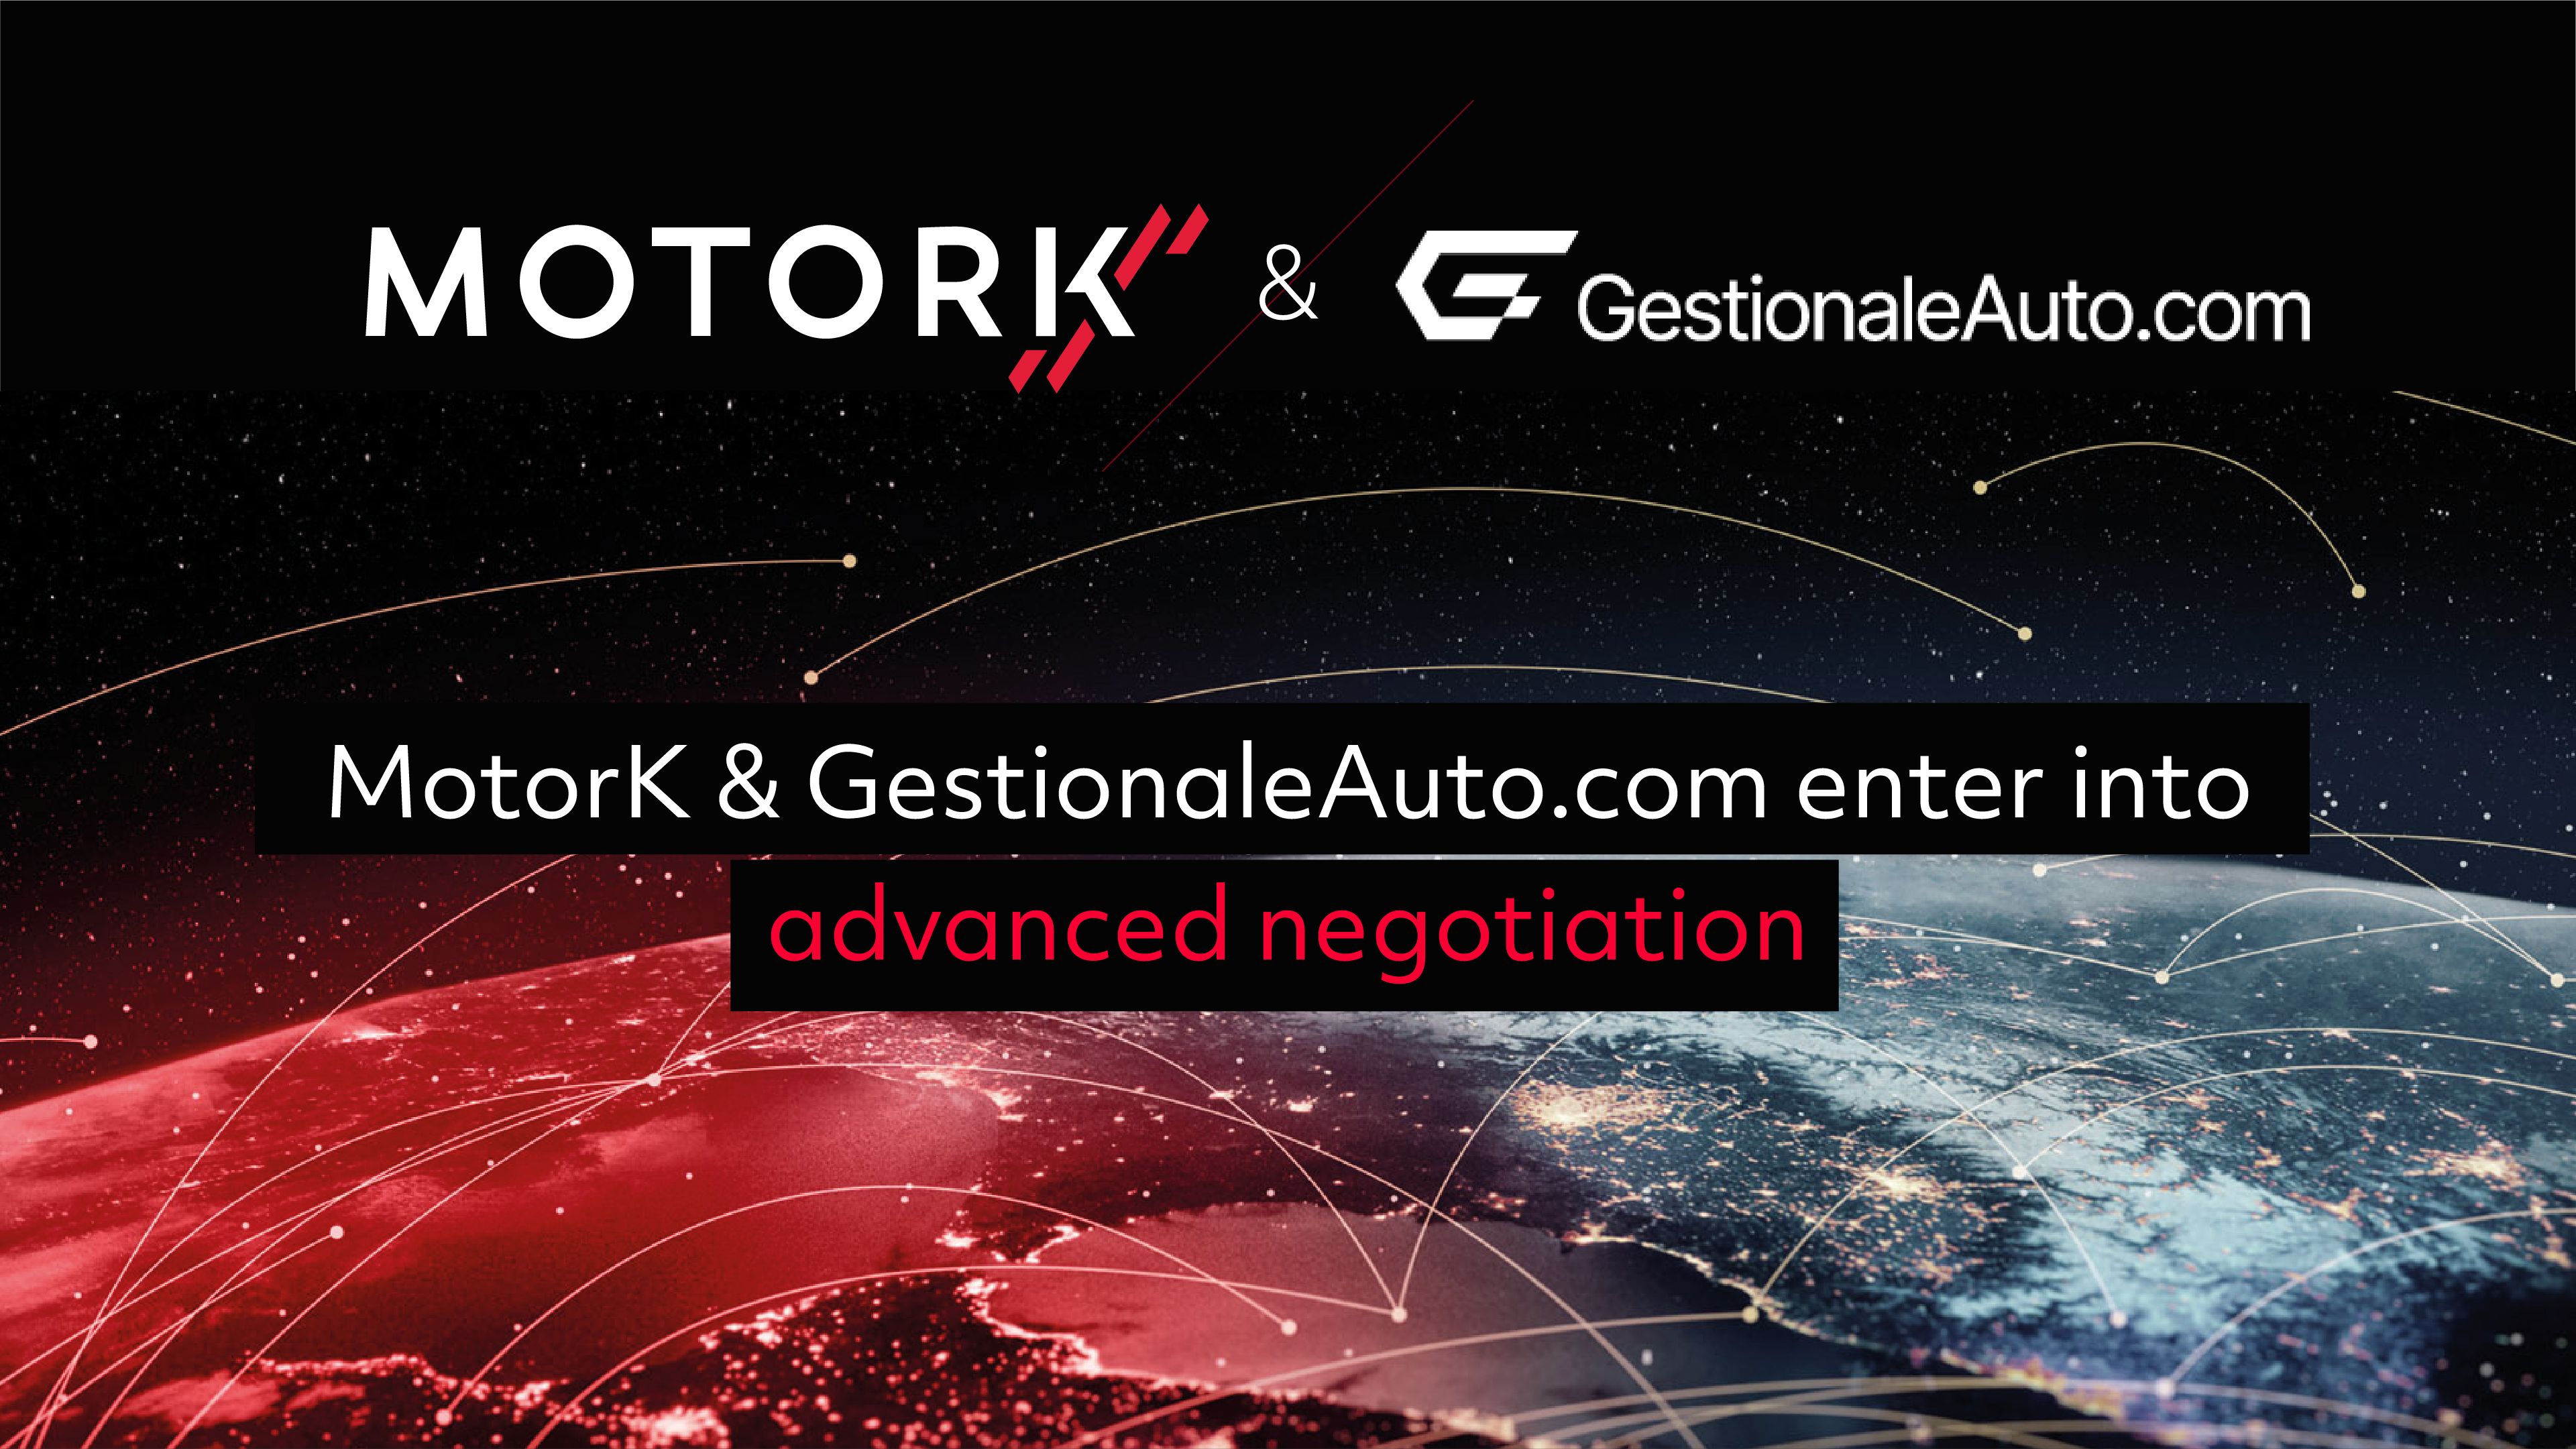 MotorK annuncia di essere in trattativa avanzata per l’acquisizione di GestionaleAuto.com